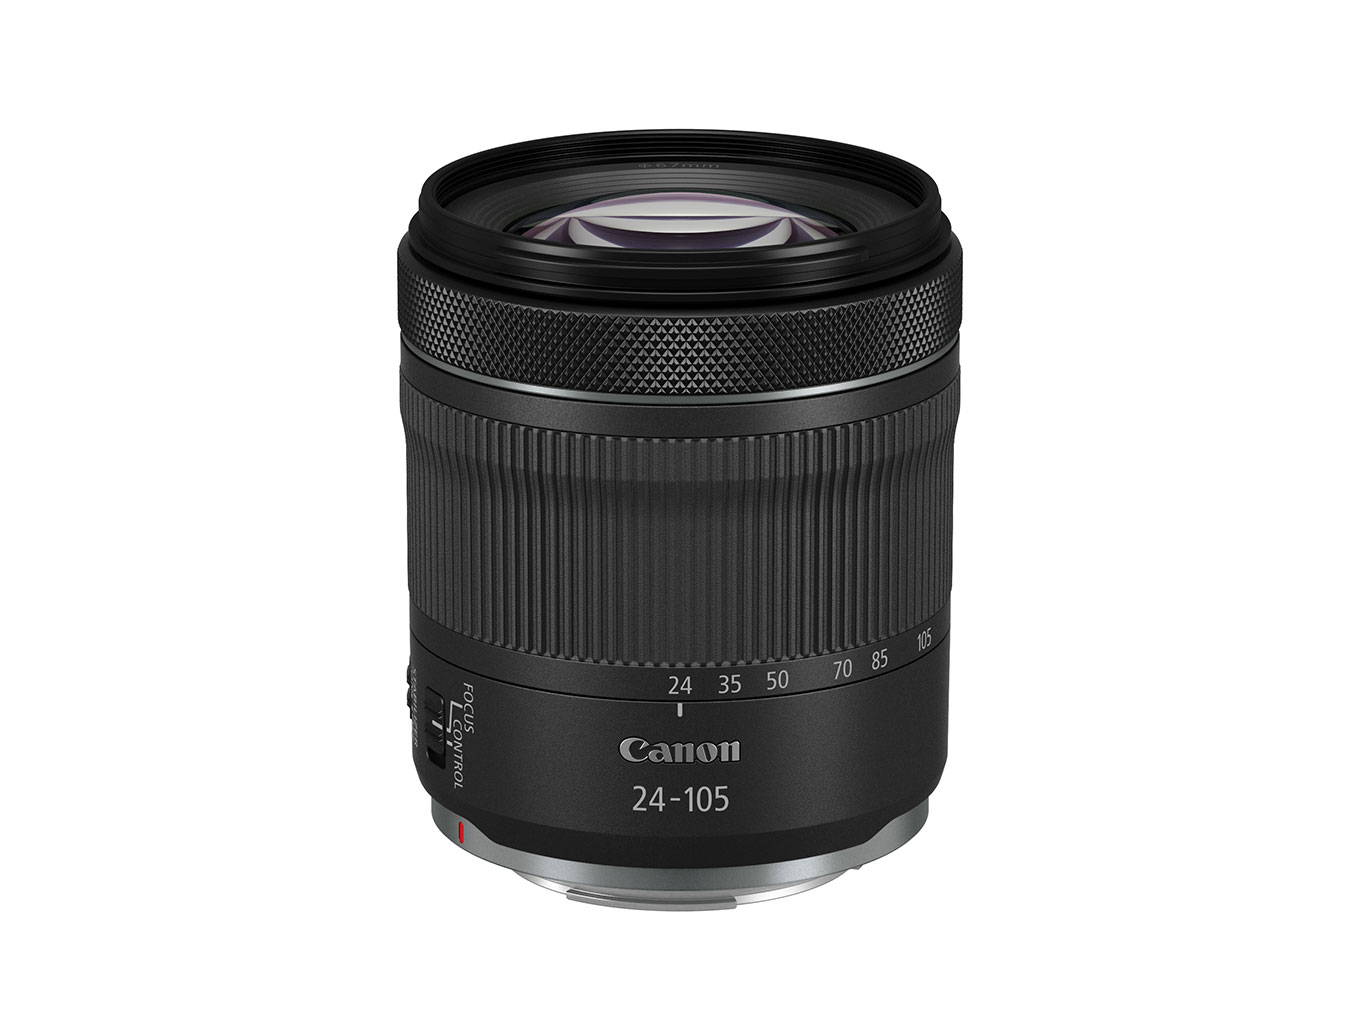 Canon giới thiệu ống kính RF 24-105mm F4-7.1 IS STM giá rẻ, chỉ 400 USD